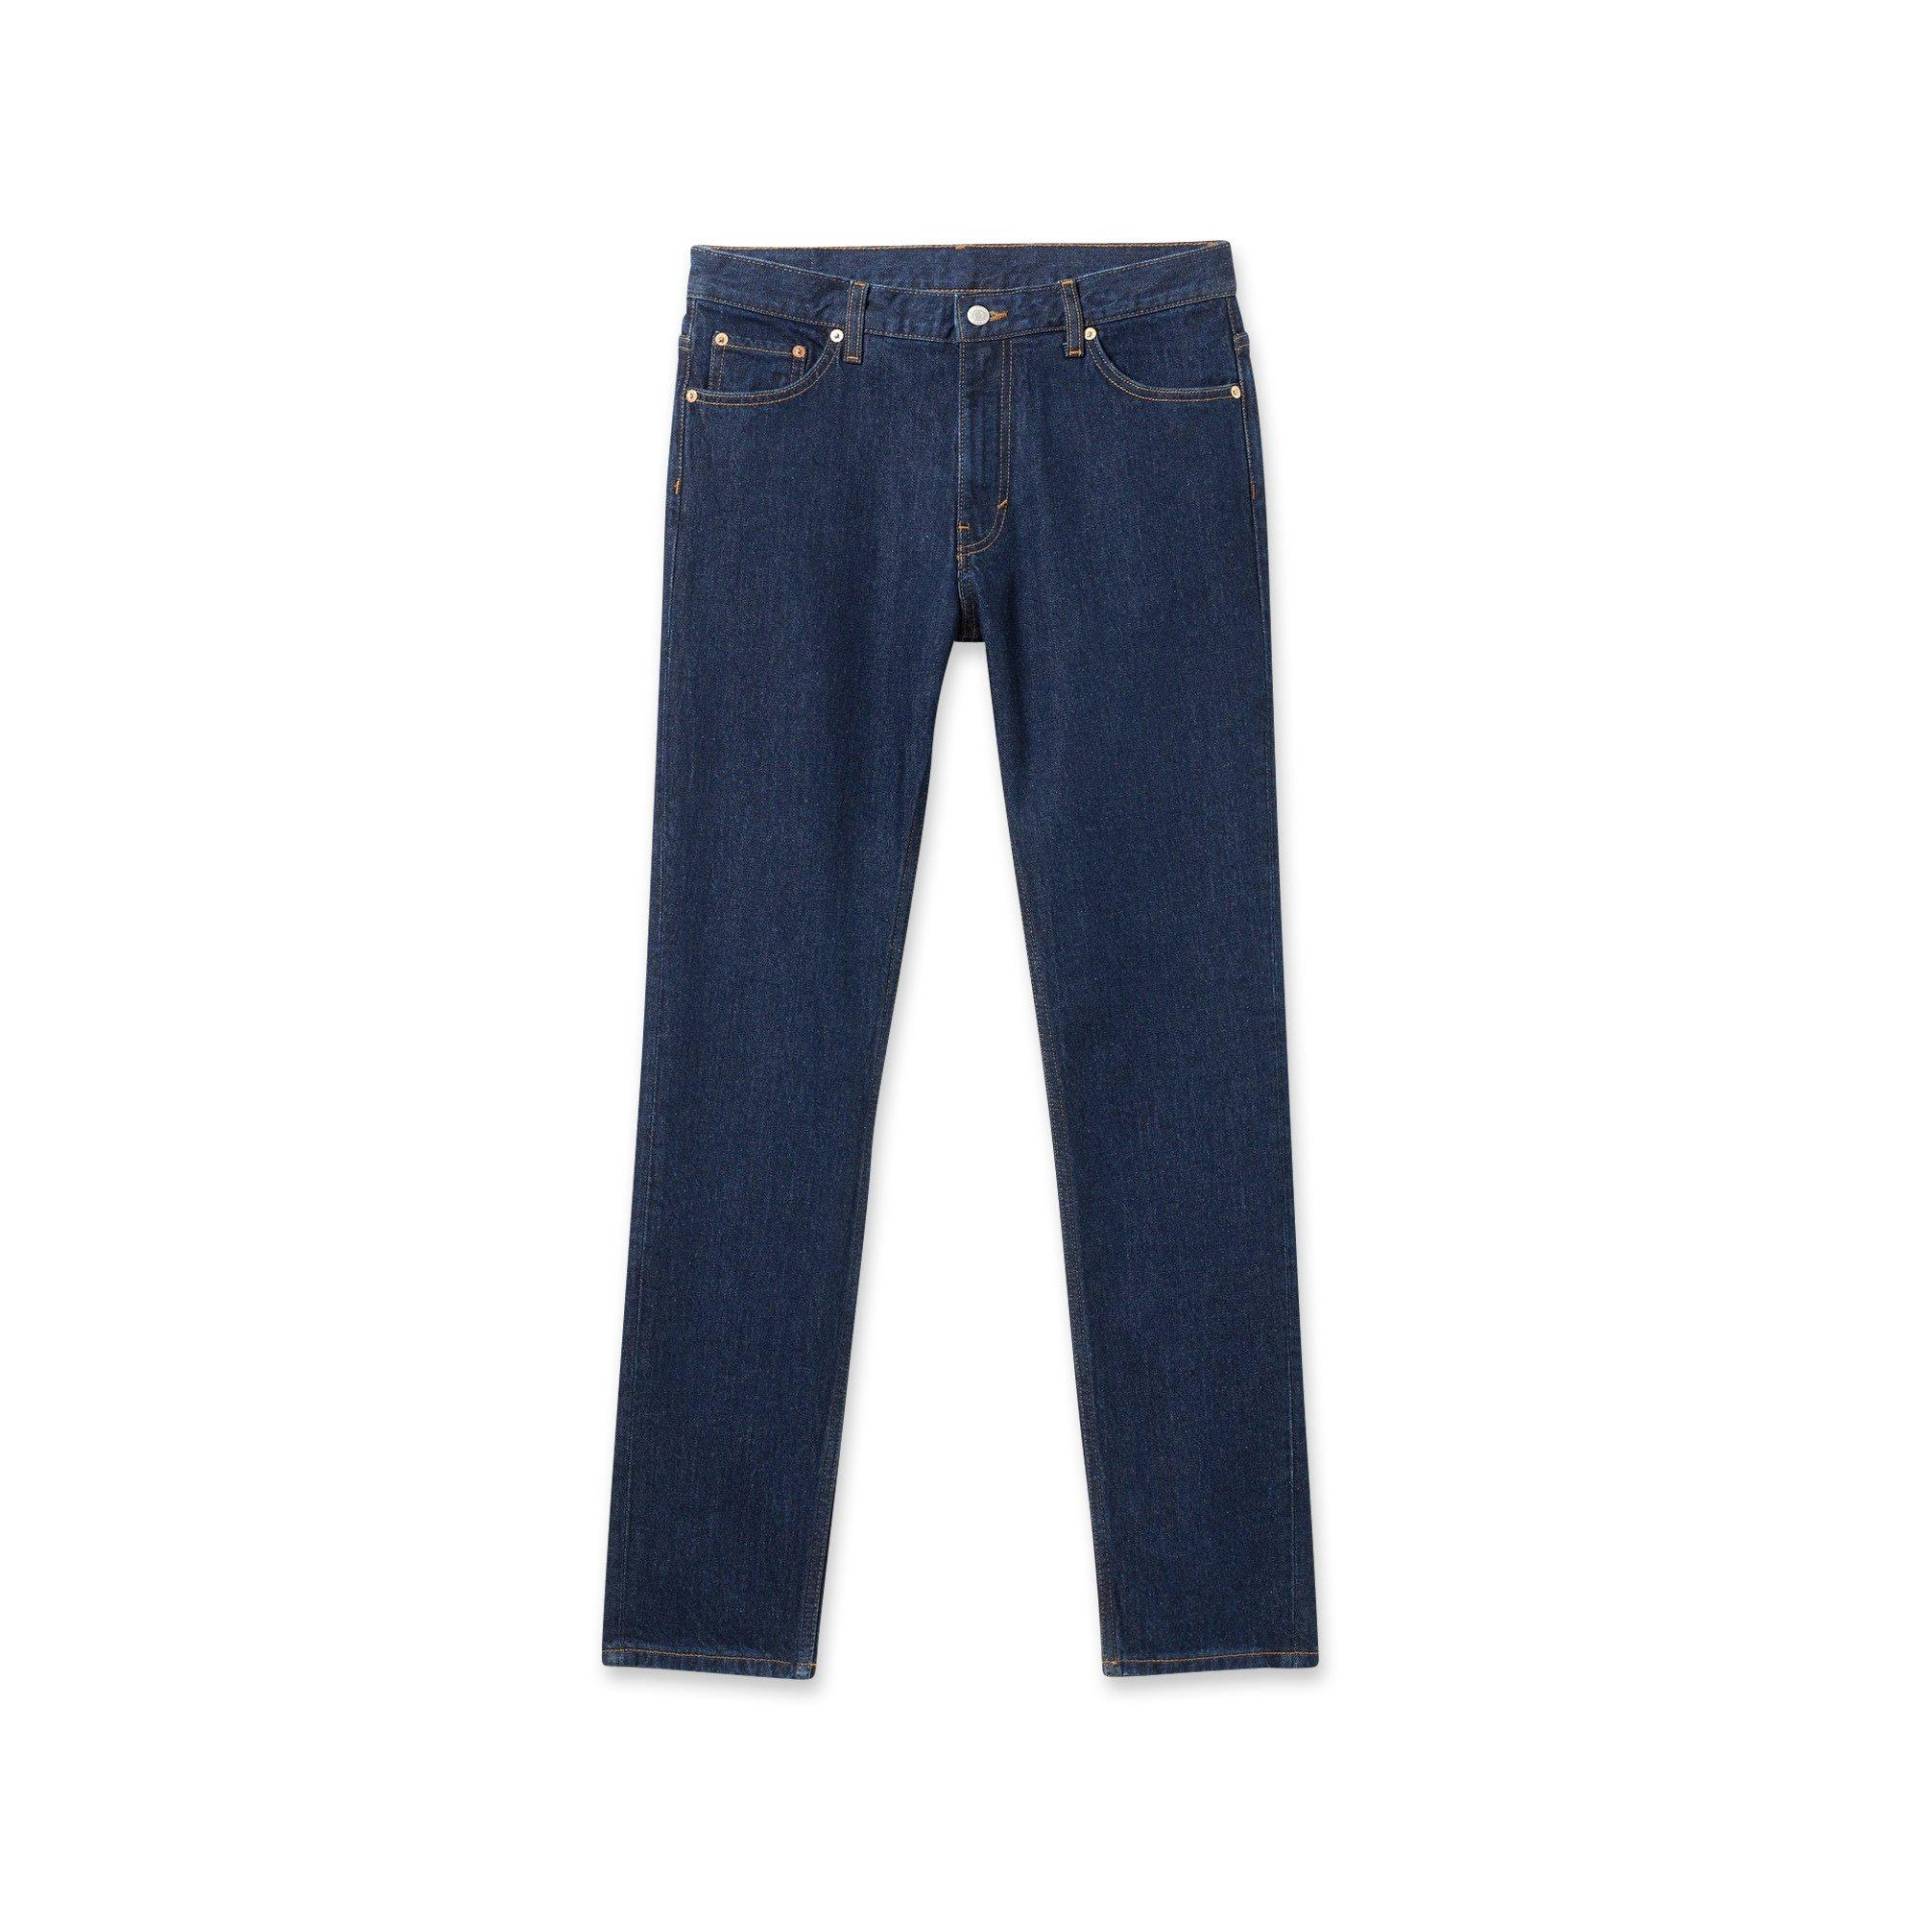 Jeans, Tapered Fit Herren Blau L32/W32 von WEEKDAY